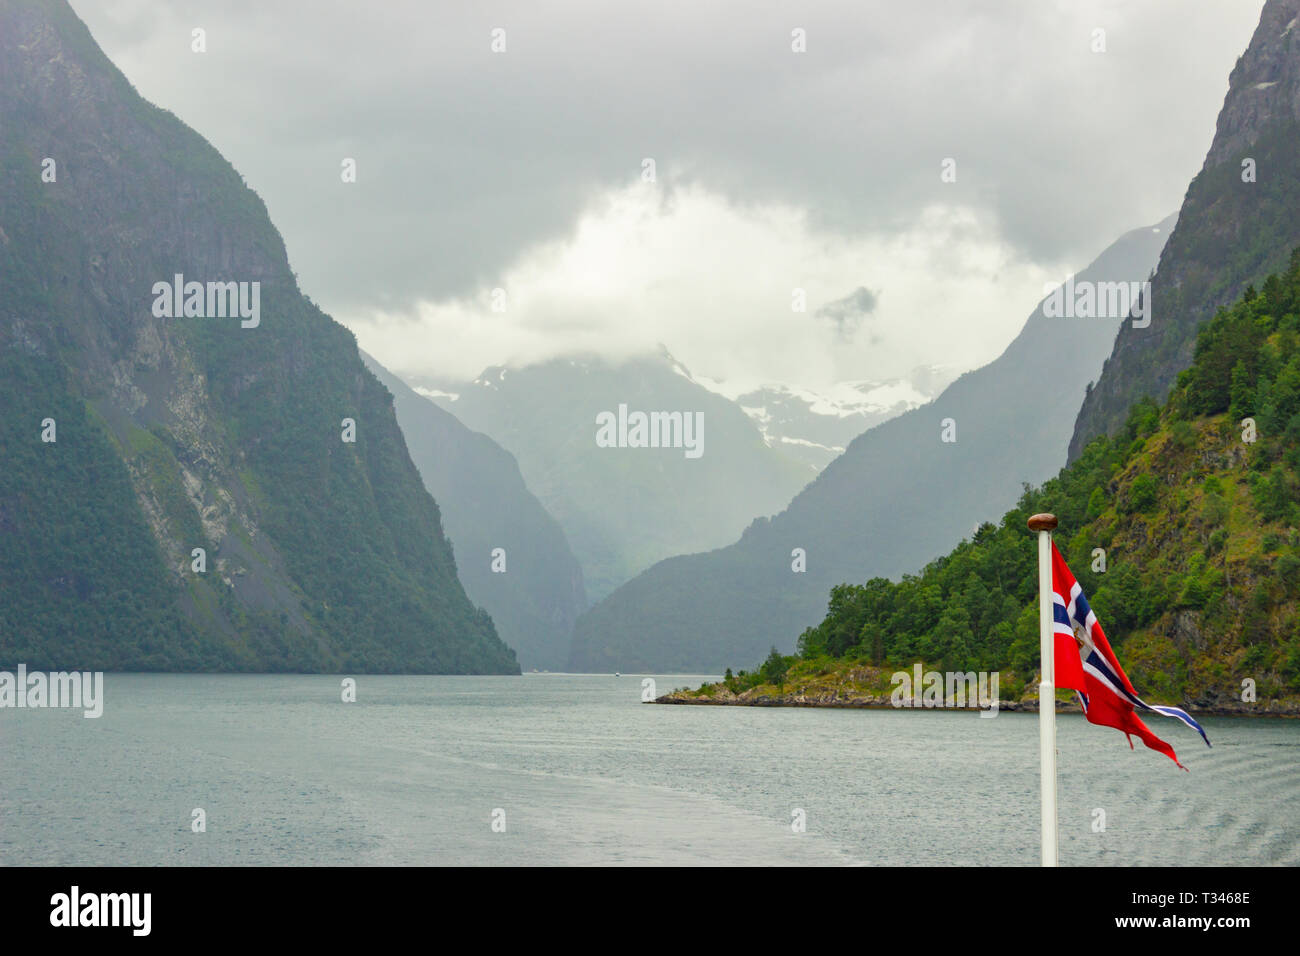 Bandiera della Norvegia sventolare nel vento su un traghetto che è voce lontano dalla terra. Nave scia del tracciato su acqua dietro un vaso, montagne distanti, bella evenin Foto Stock